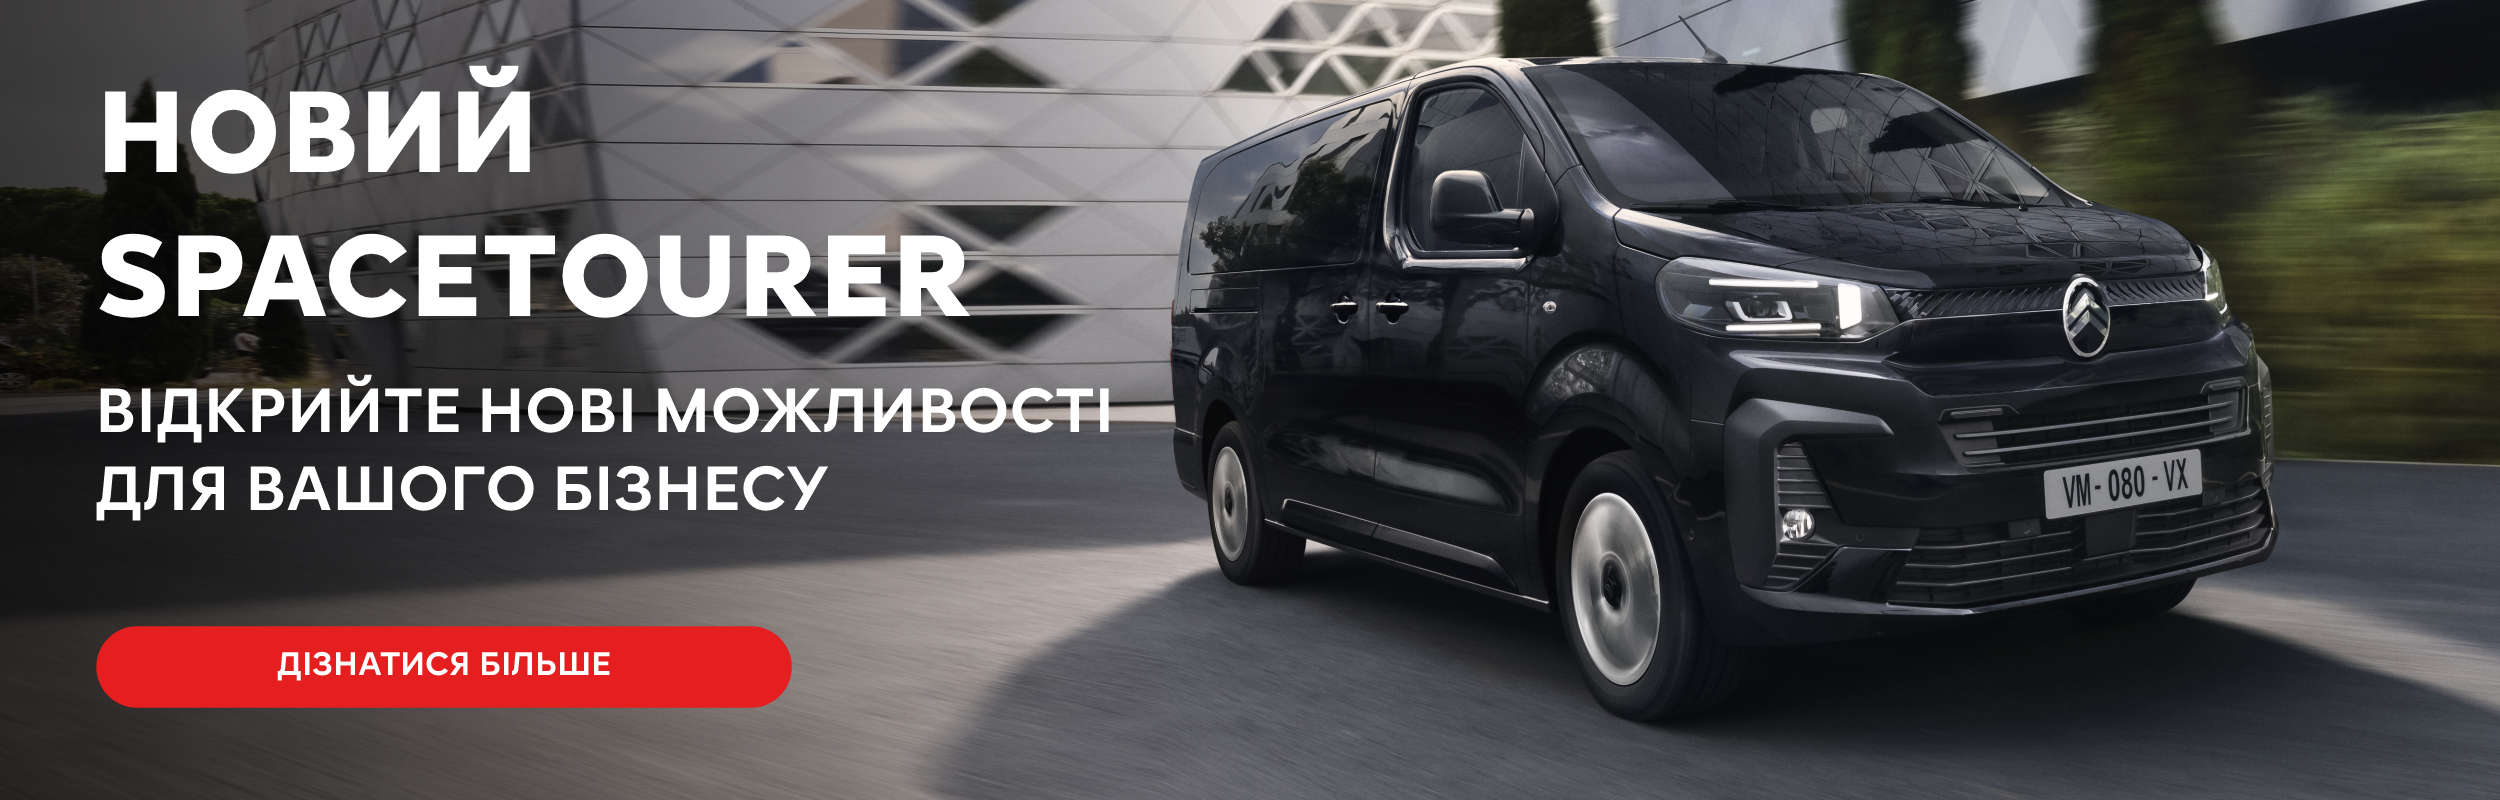 Автосалон Citroen «Лион Авто» | Официальный дилер в Запорожье | Головна